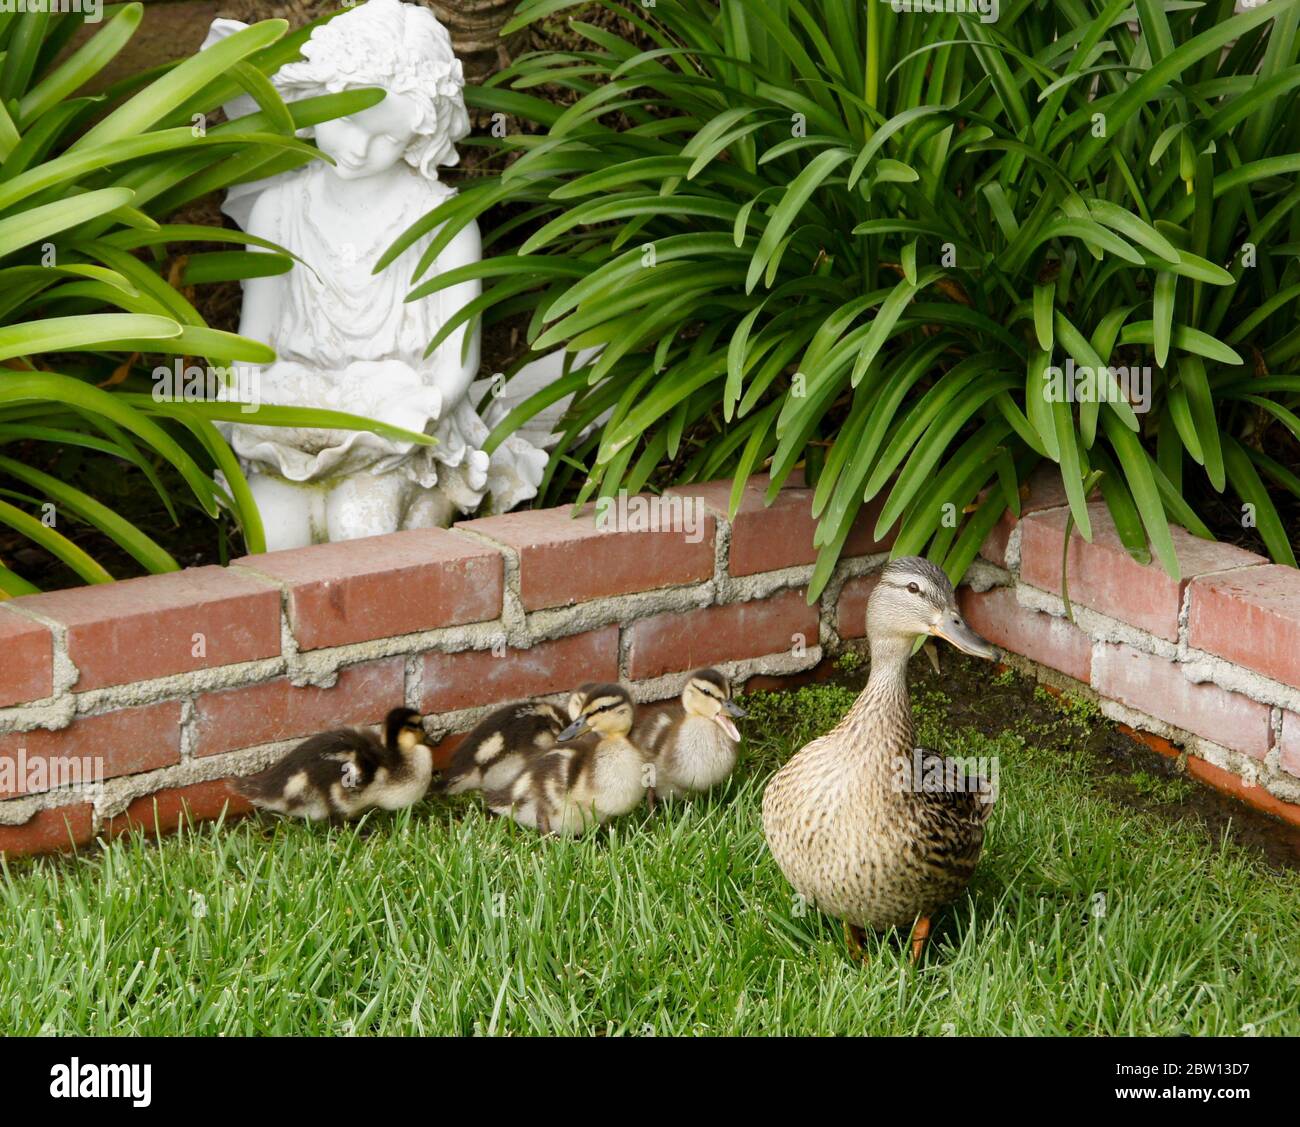 Hembra (gallina) pato de pato con patos en el patio trasero de la casa del sur de California Foto de stock